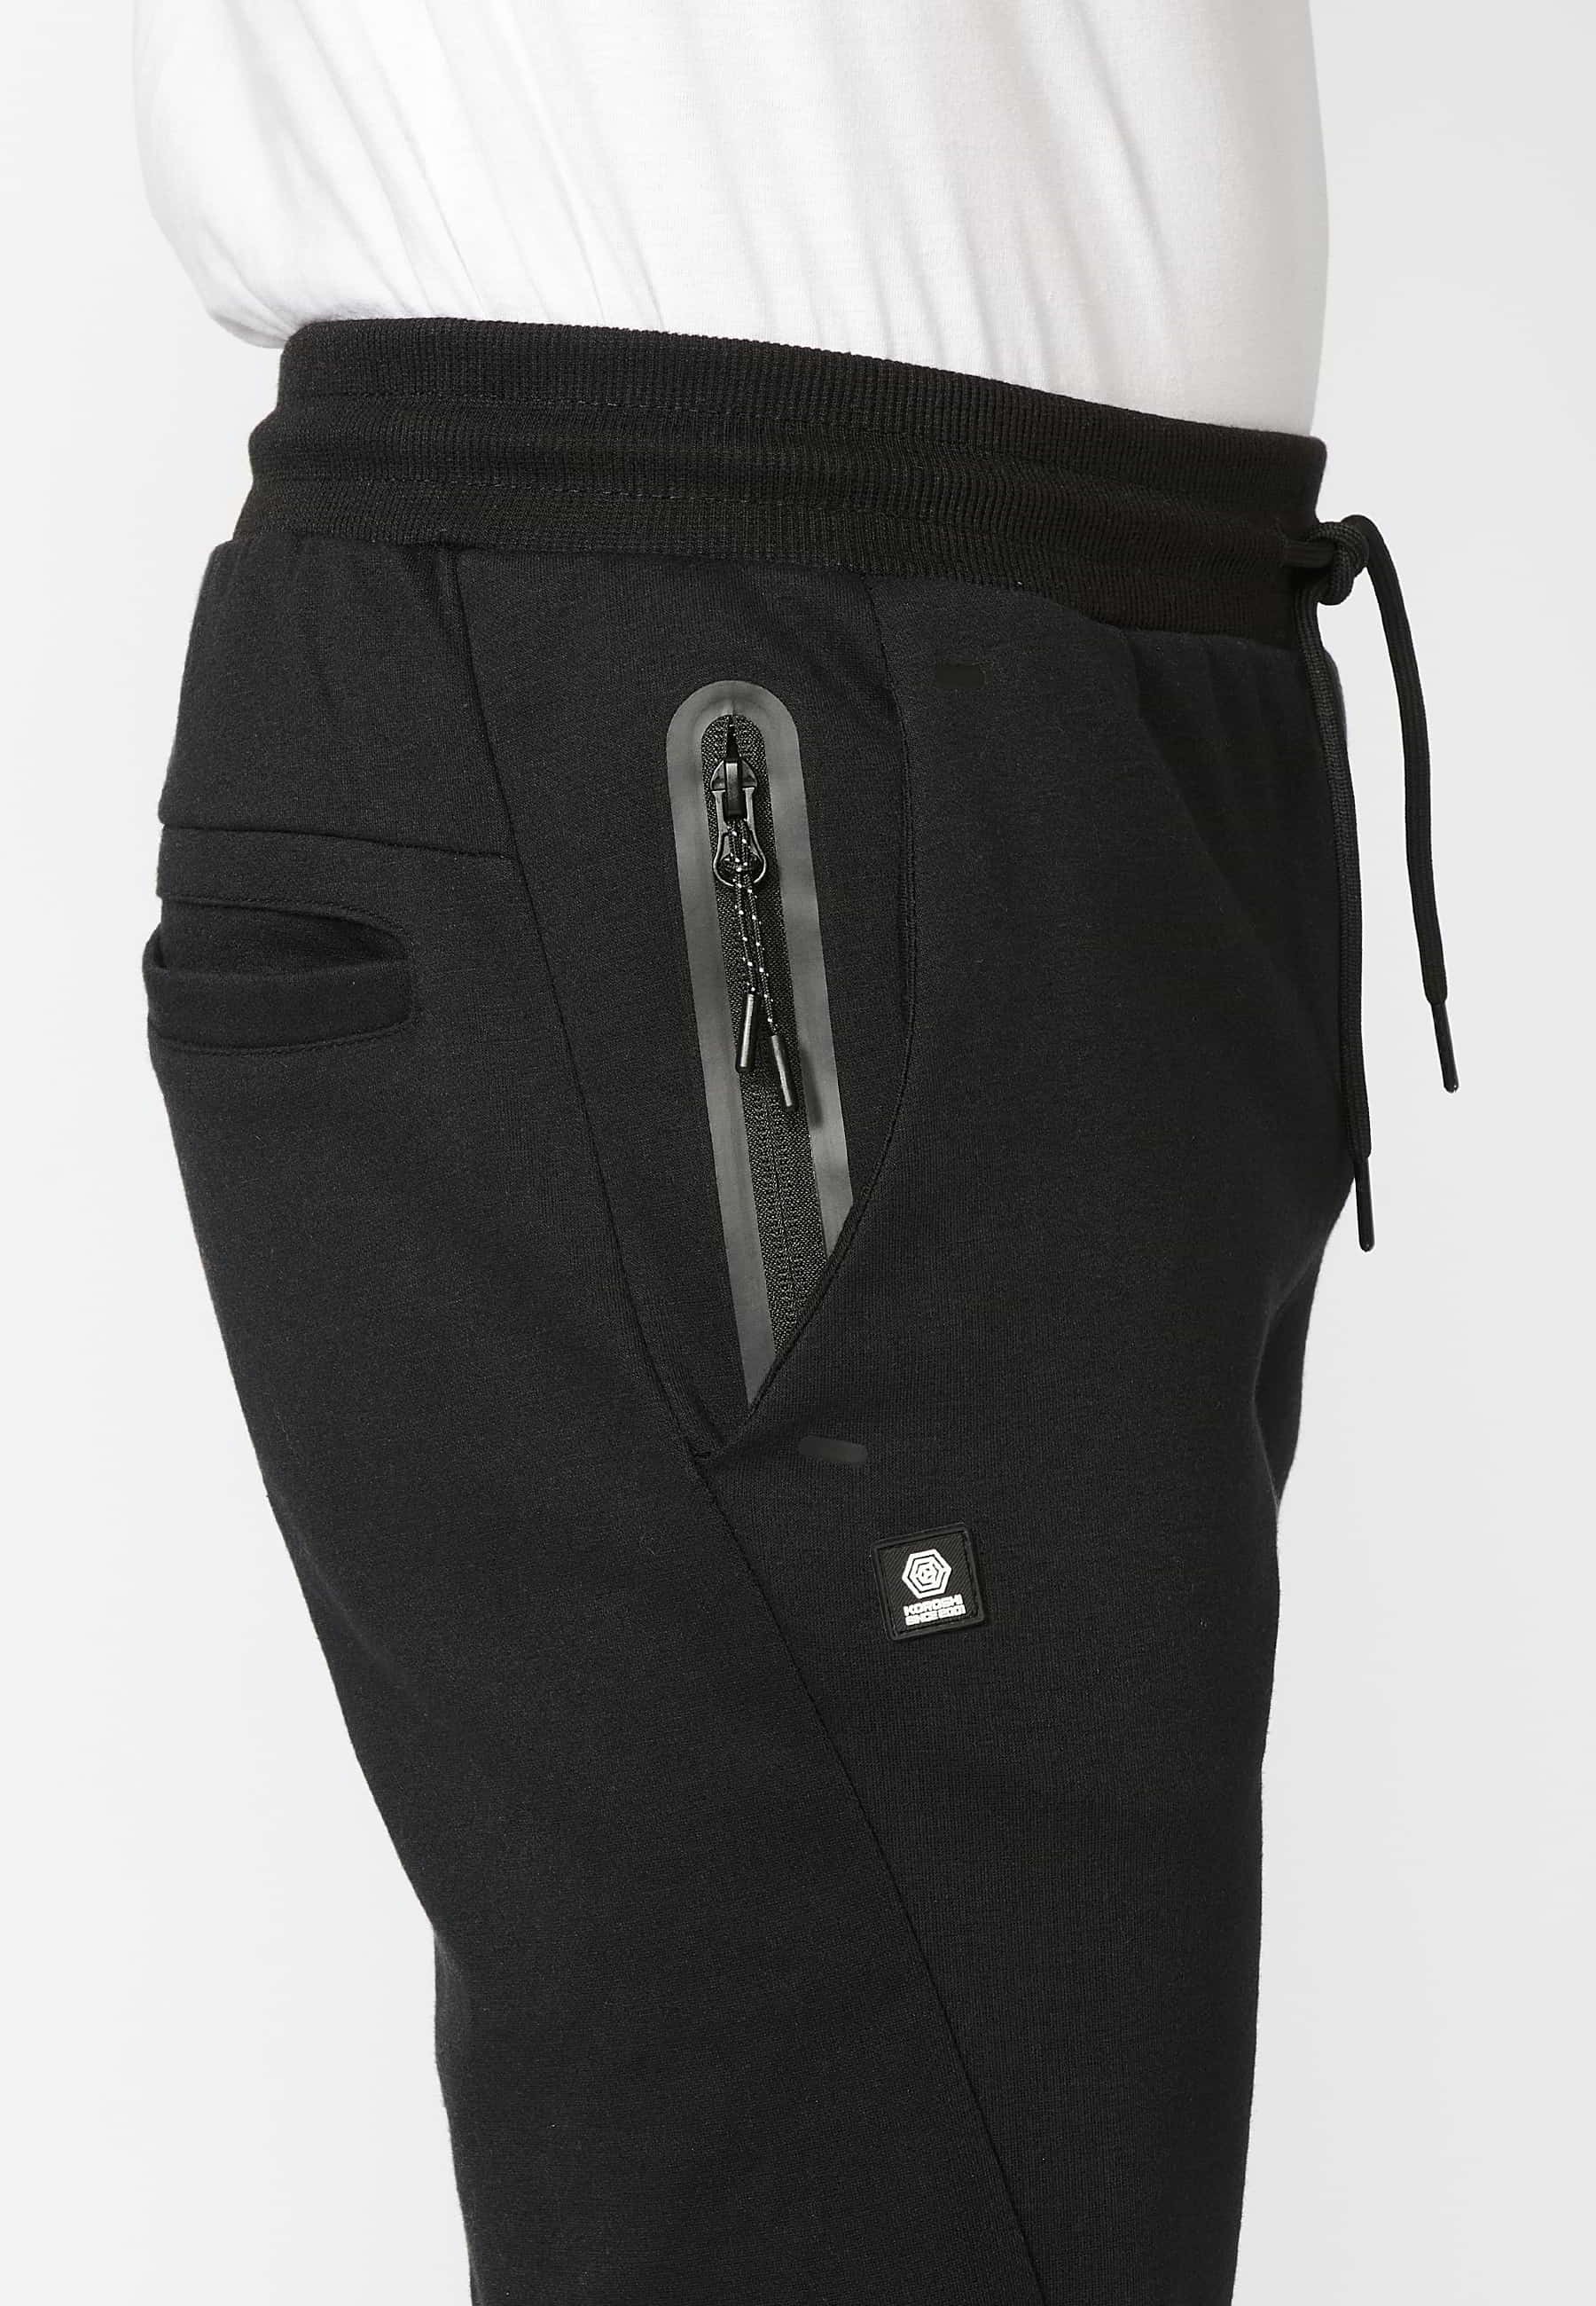 Pantalon de jogging long avec taille élastique réglable, détail de poche, couleur Noir pour Homme